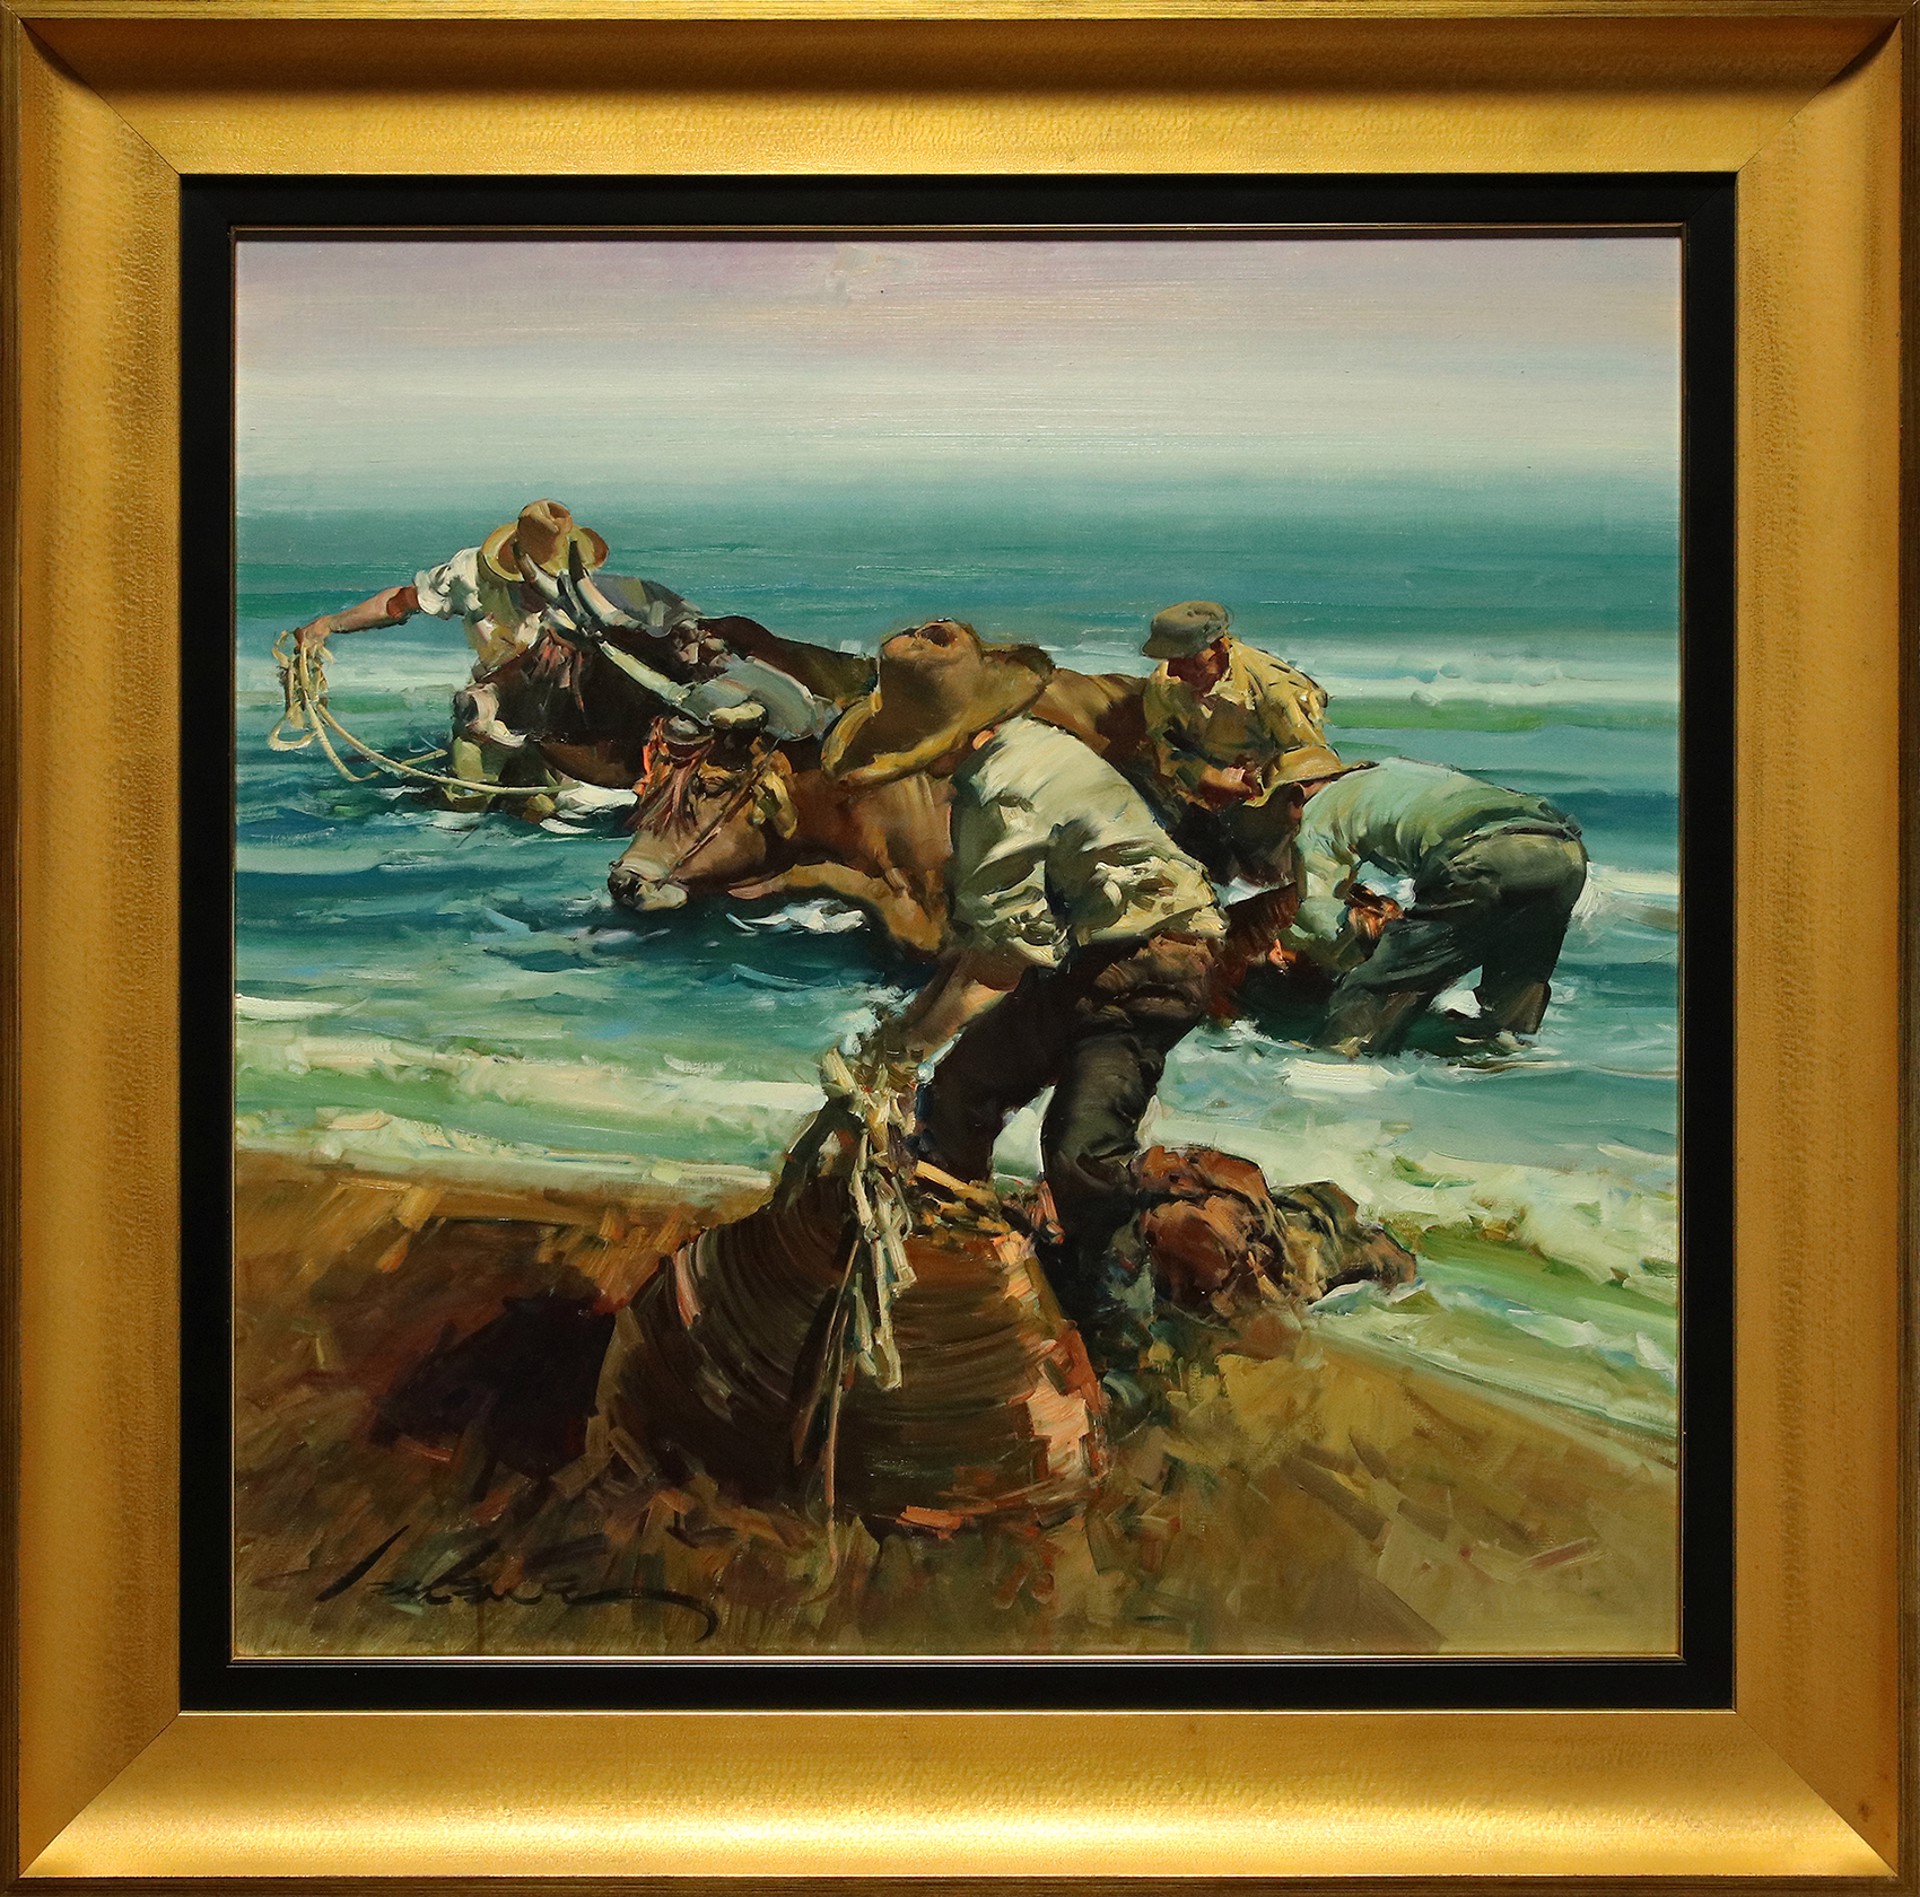 Oxen On The Beach III by Eustaquio Segrelles